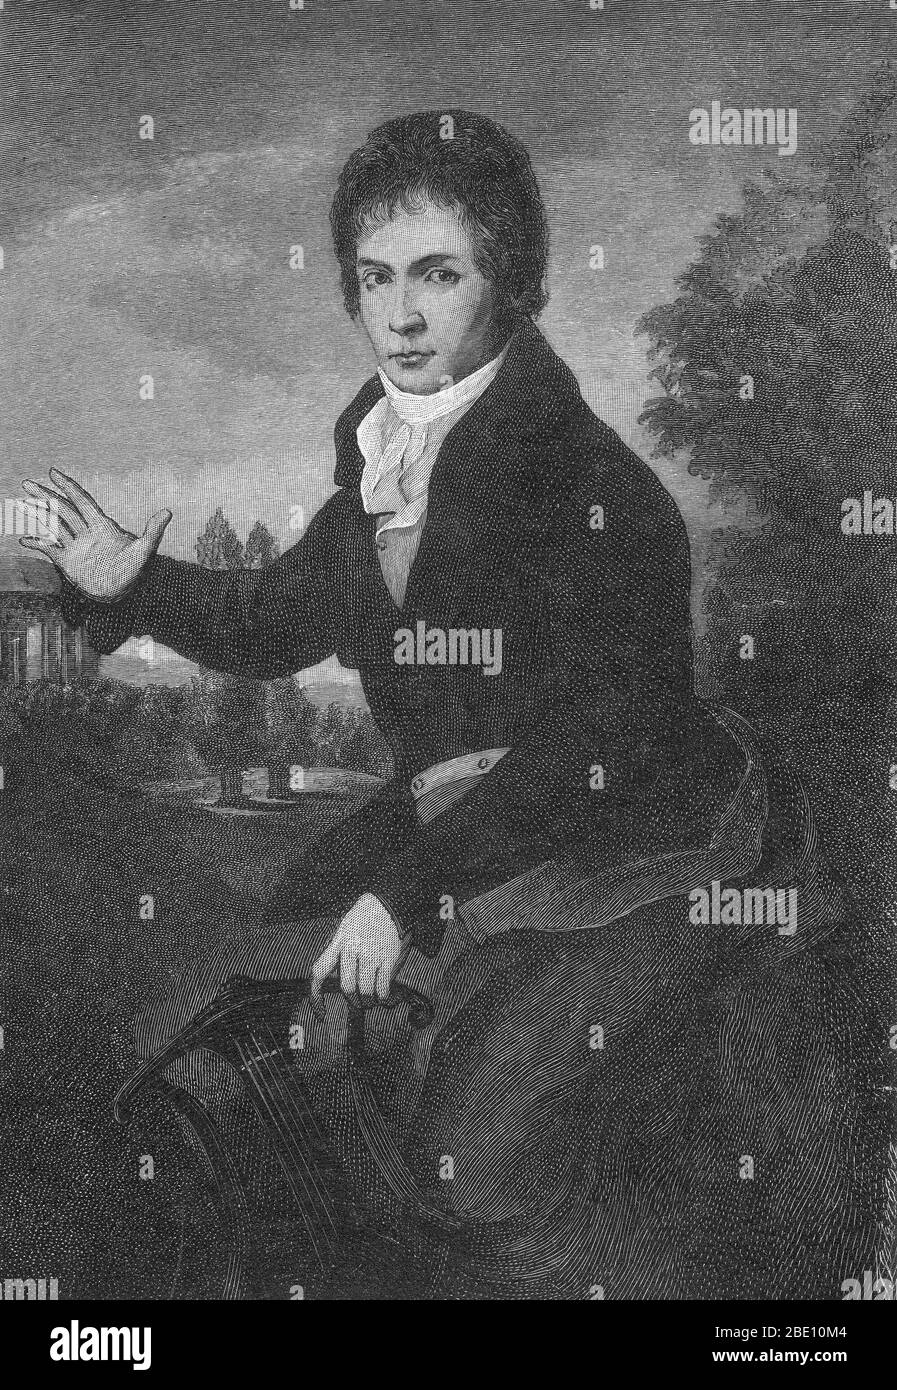 Ludwig van Beethoven (17 dicembre 1770 – 26 marzo 1827) è stato un . Figura cruciale nella transizione tra l'era classica e quella romantica nella musica d'arte occidentale, rimane uno dei più famosi e influenti di tutti i compositori. Beethoven nacque a Bonn, ma si trasferì a Vienna nei primi anni 20, studiando con Joseph Haydn e guadagnando rapidamente la reputazione di pianista virtuoso. La sua udienza cominciò a deteriorarsi alla fine degli anni venti, eppure continuò a comporre, a condurre e a svolgere, anche dopo essere diventato completamente sordo. Nel 1800 circa la sua udienza cominciò a deteri Foto Stock